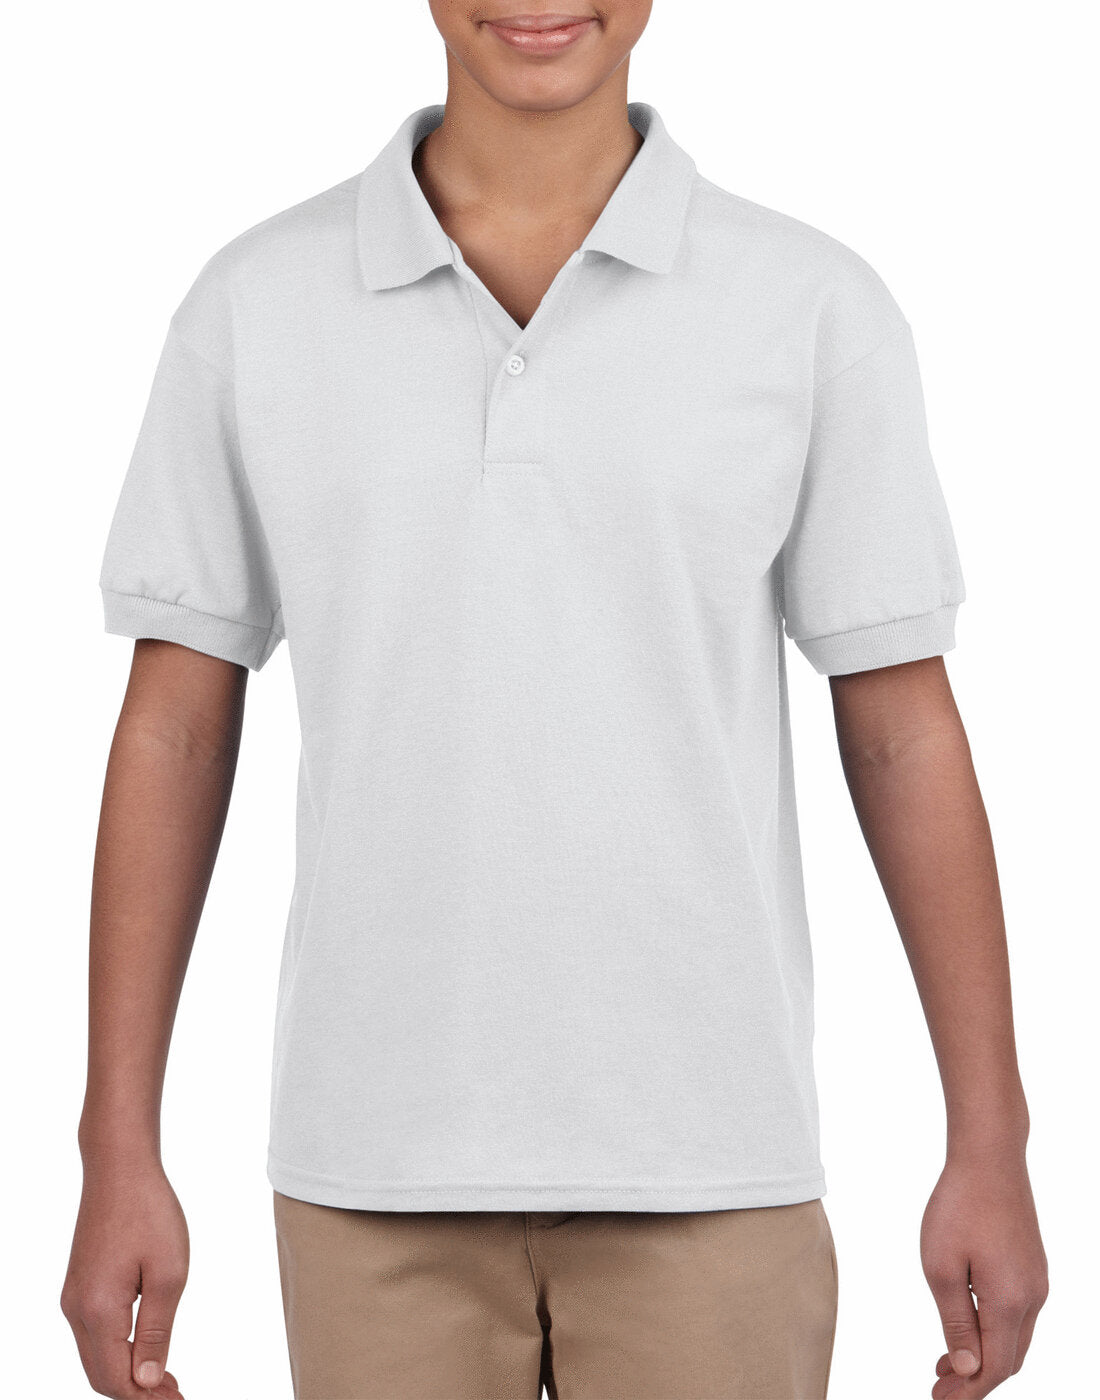 Gildan Kids Dryblend Jersey Polo Shirt